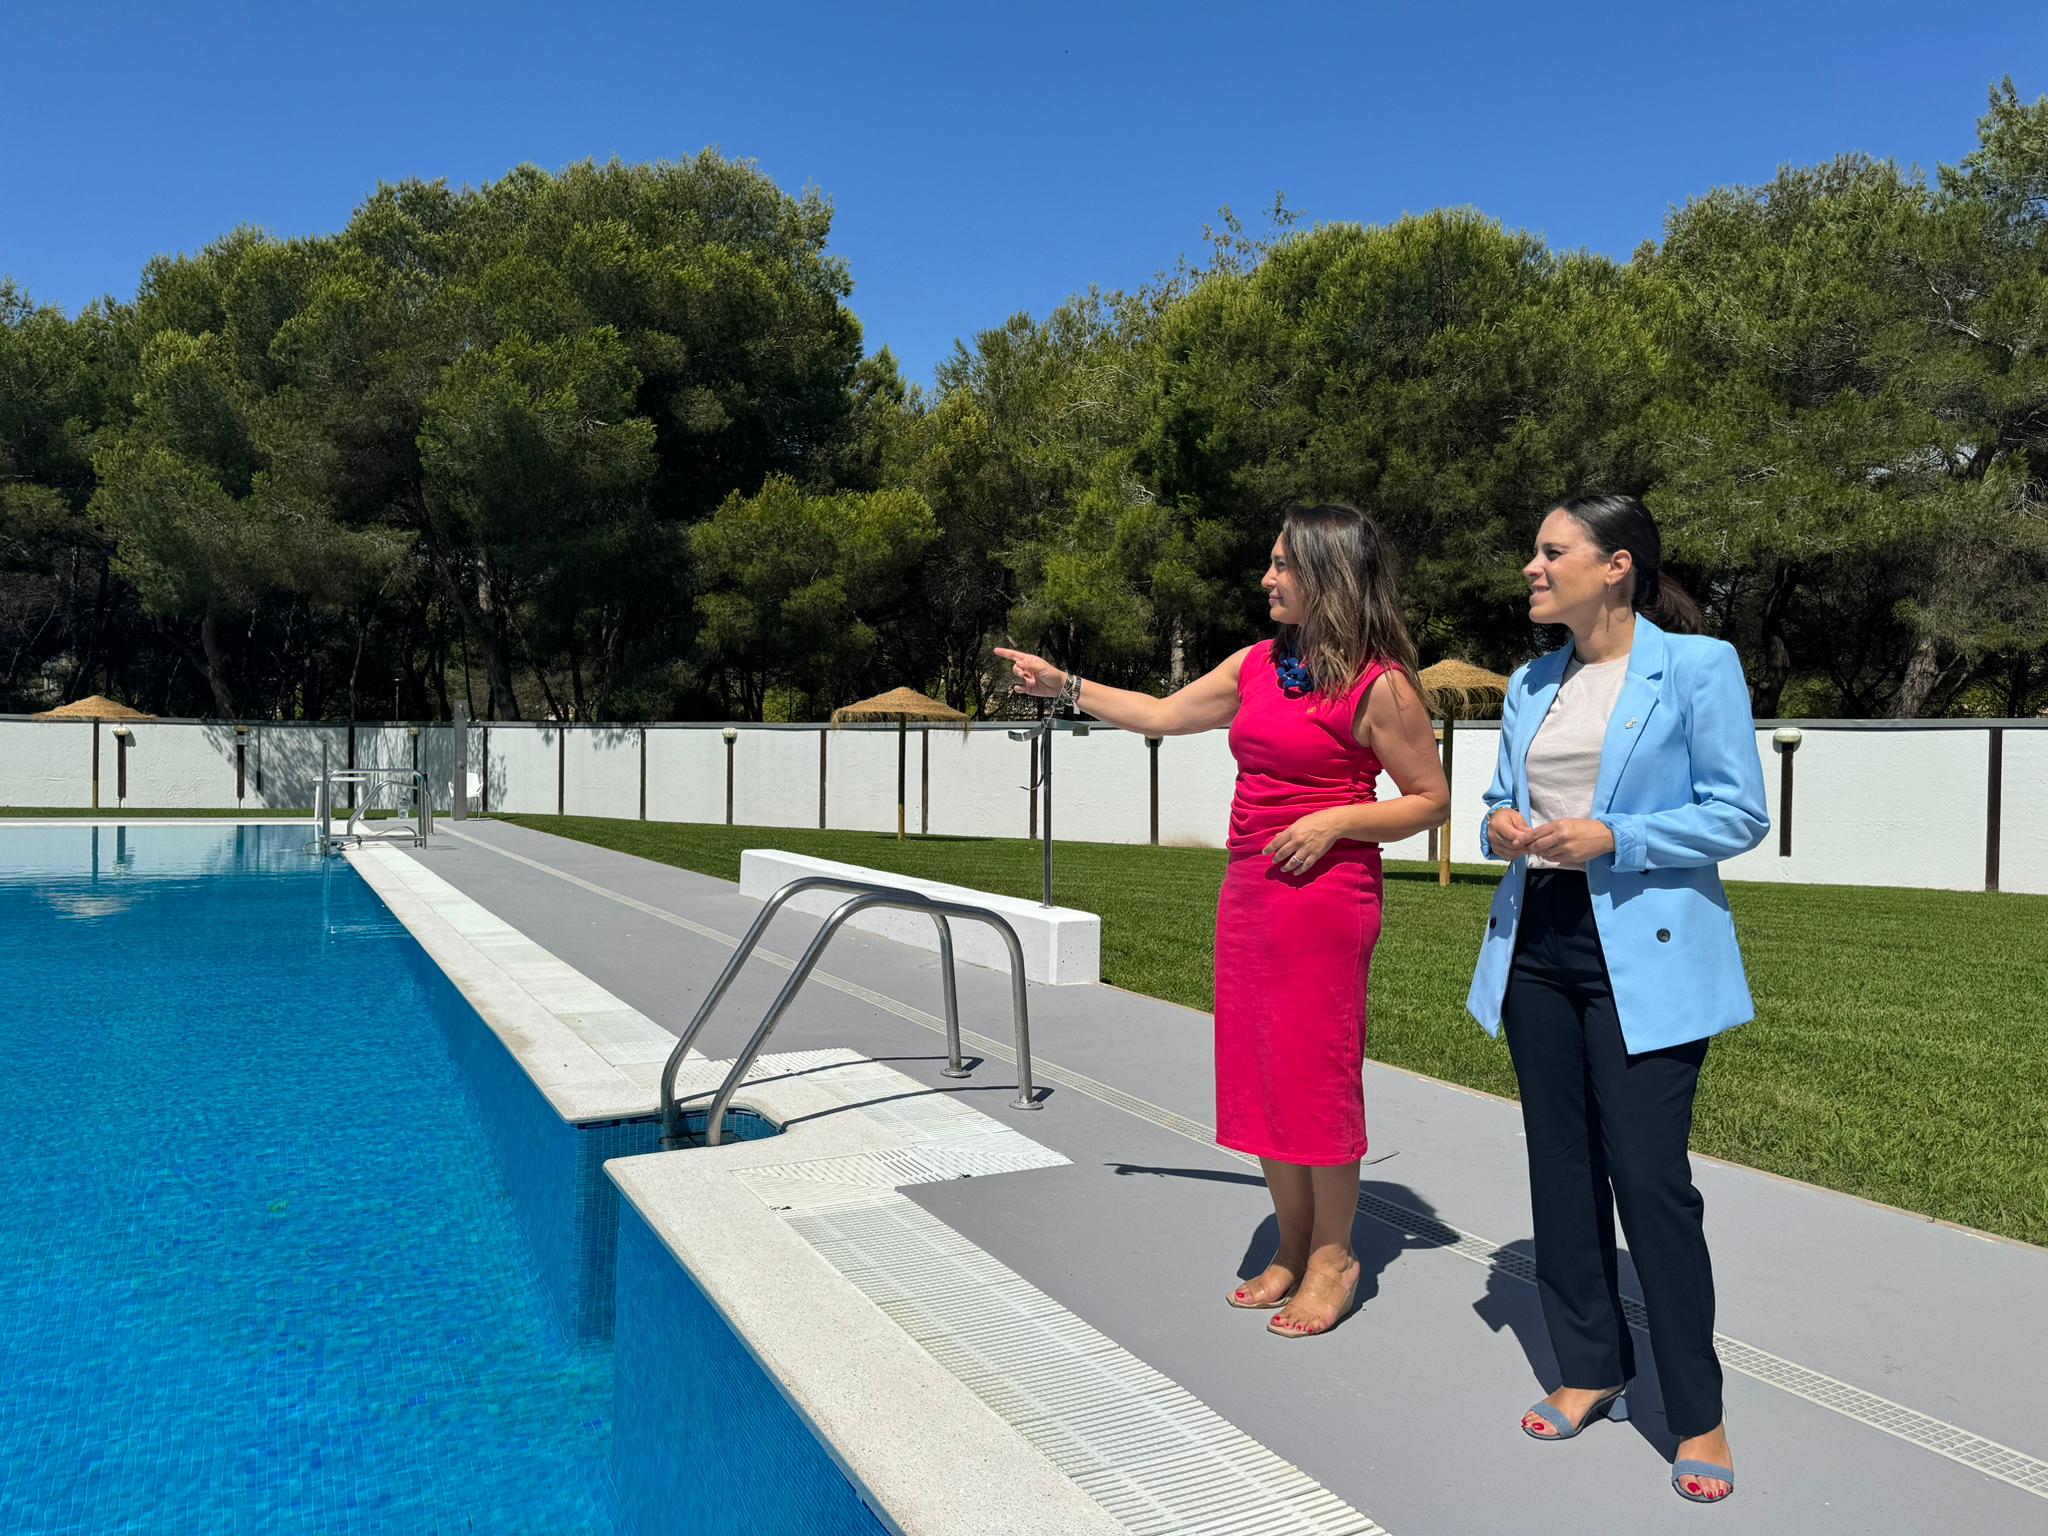 La piscina del Parque del Pinar entra en servicio el próximo sábado 22 de junio con varias mejoras para los usuarios